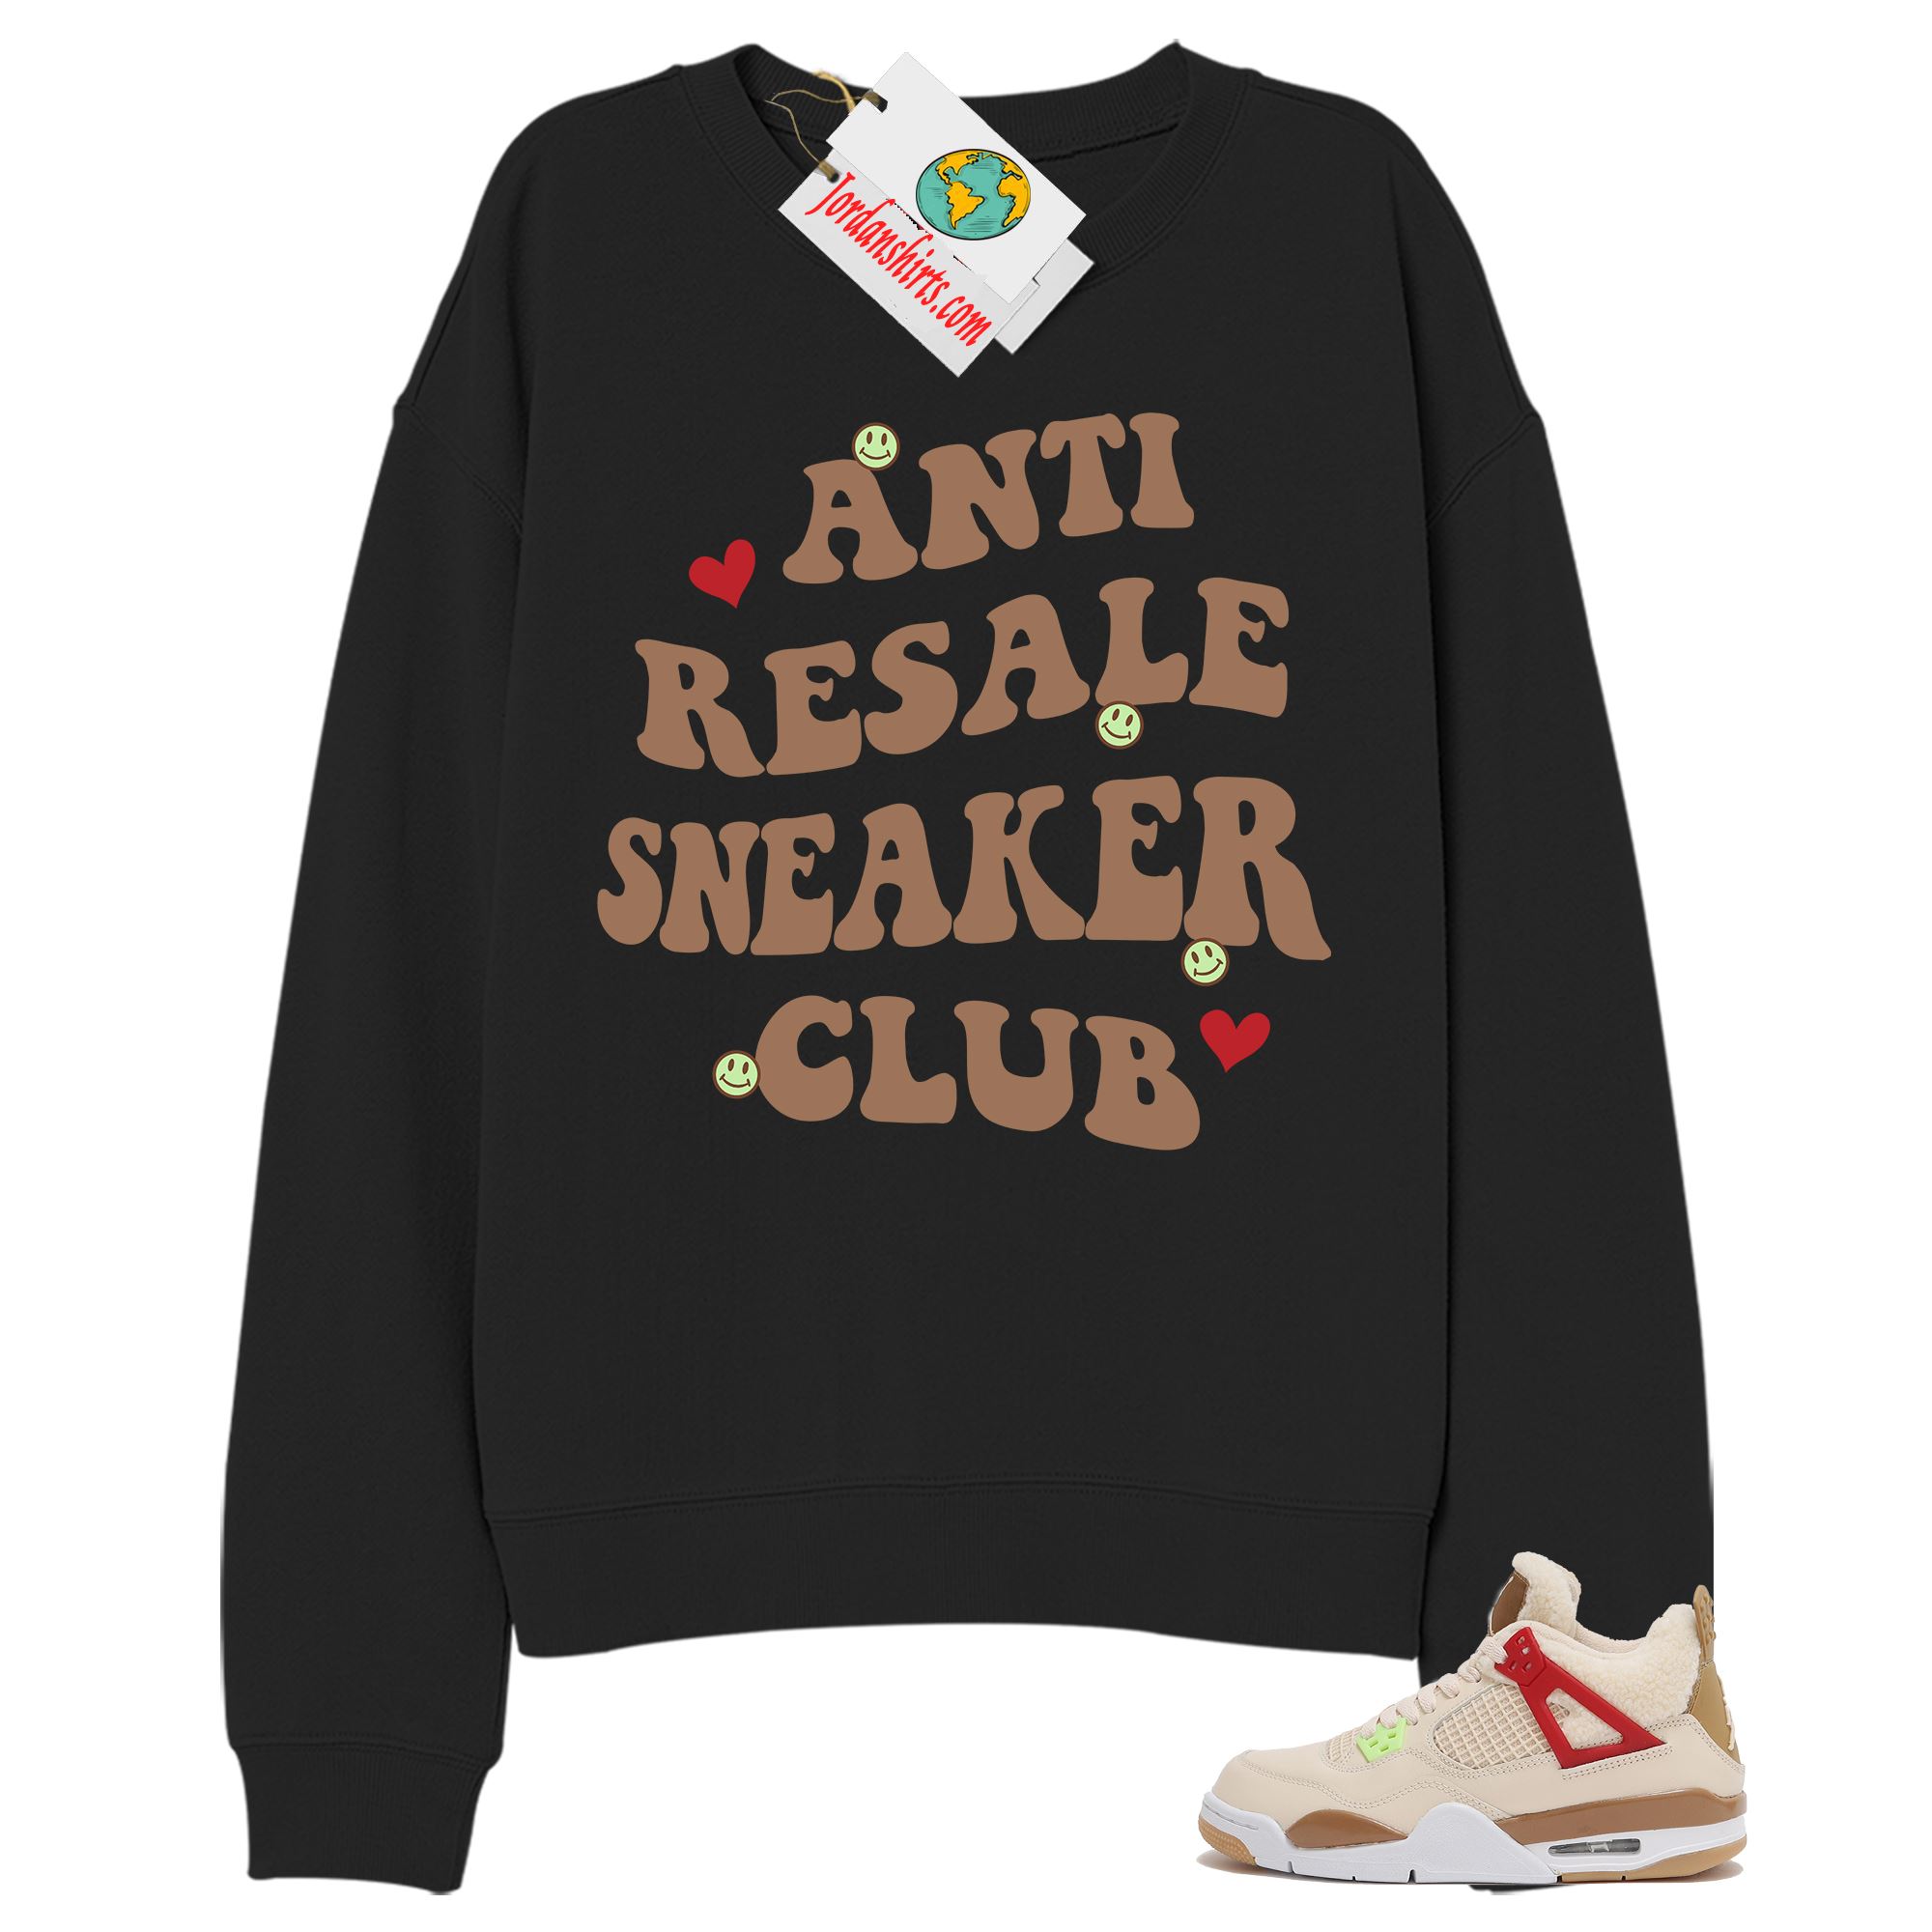 Jordan 4 Sweatshirt, Anti Resale Sneaker Club Black Sweatshirt Air Jordan 4 Wild Things 4s Plus Size Up To 5xl